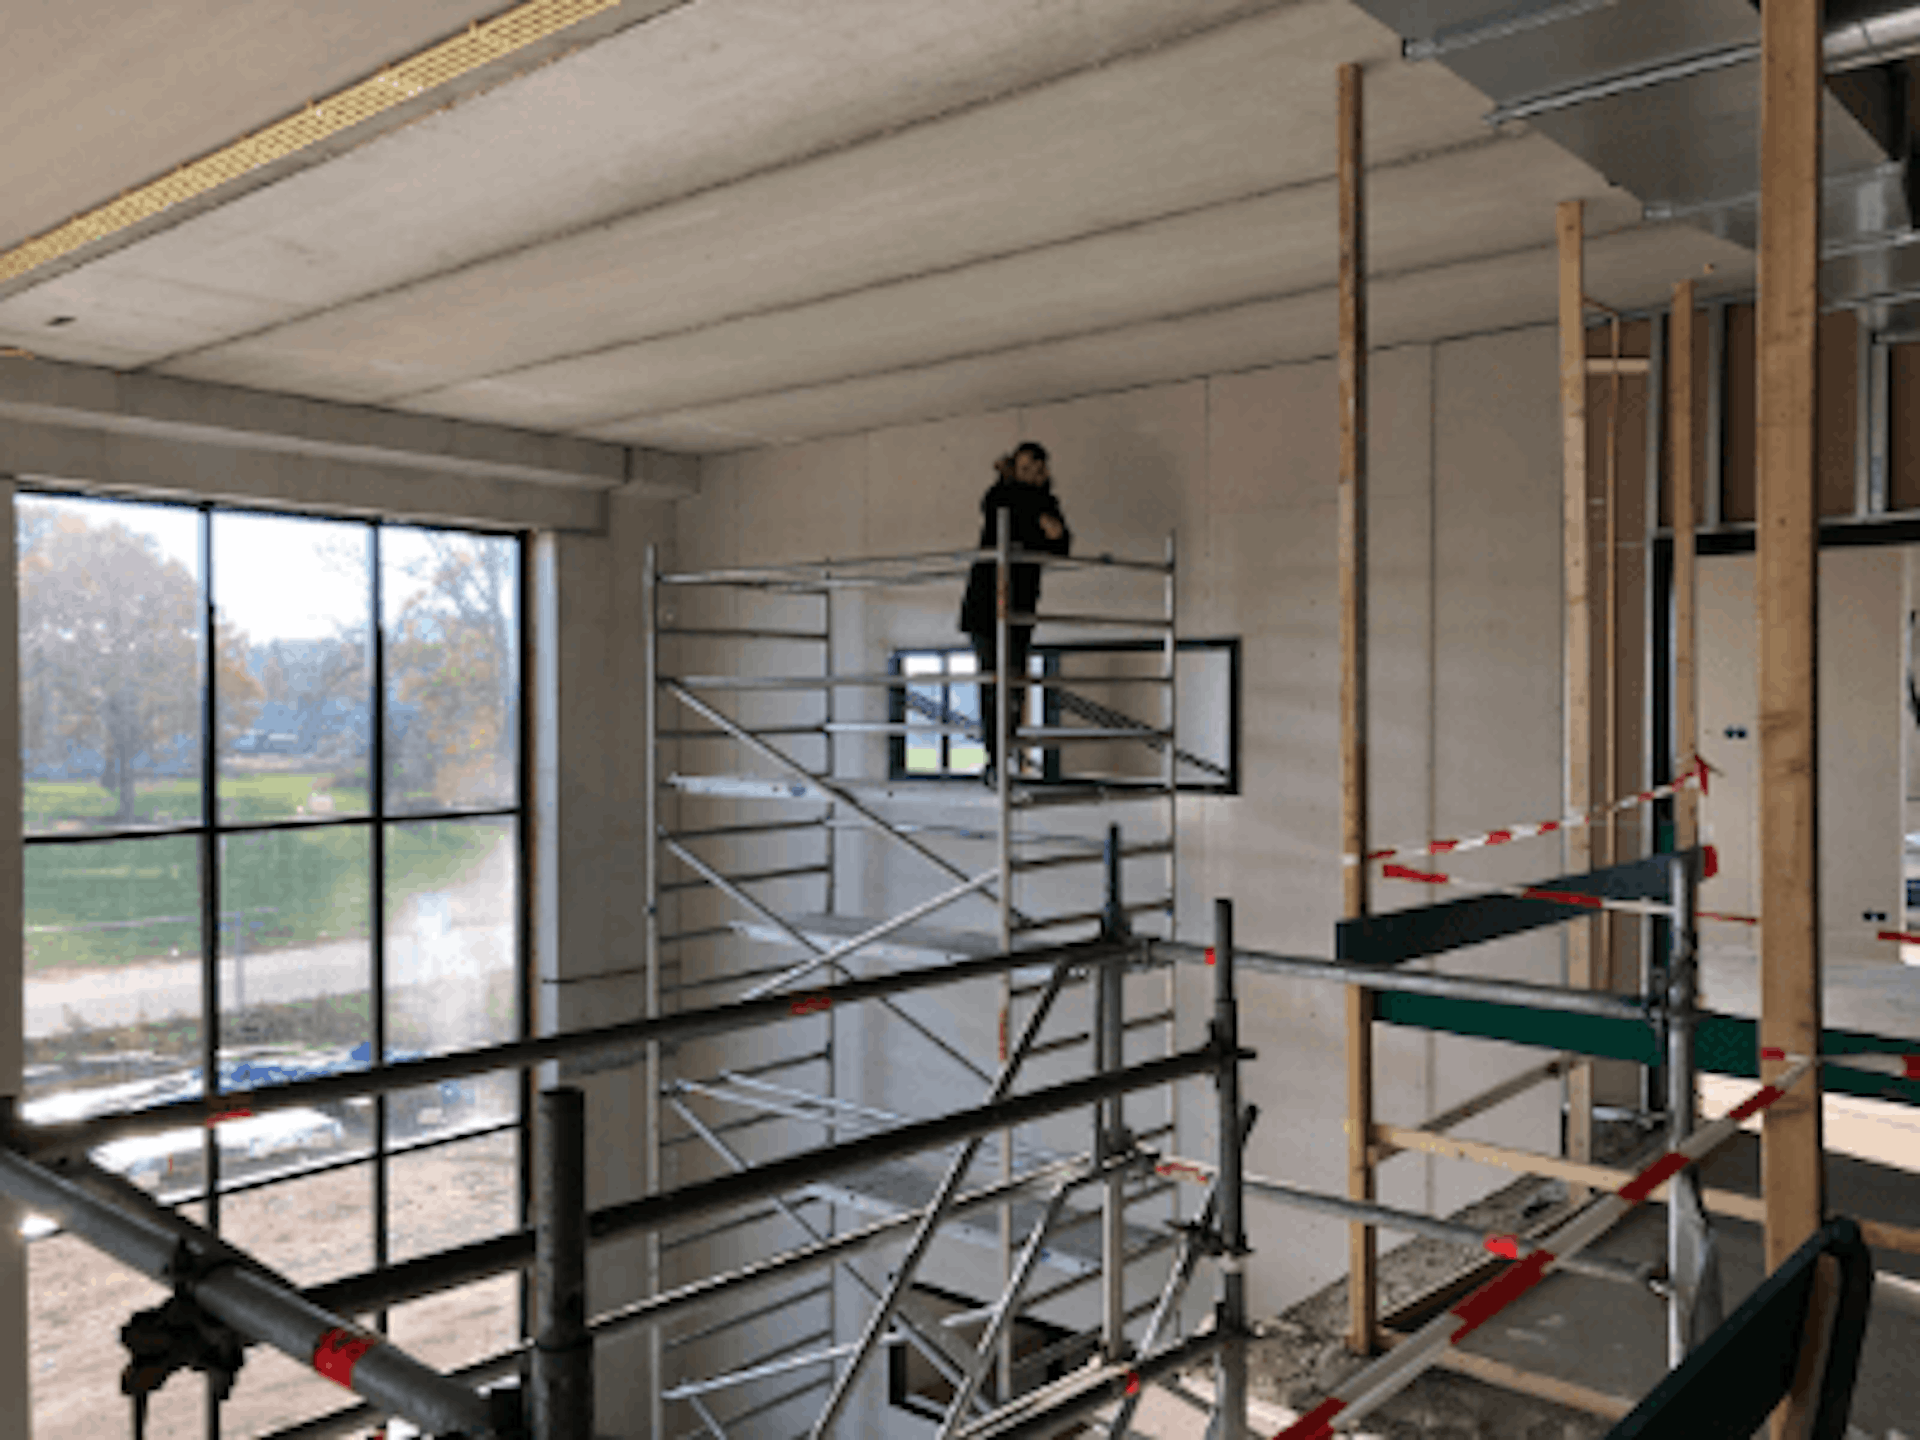 Nieuwbouw Van Raam fabriek in Varsseveld - Kalenderweek 47 (november 2018)